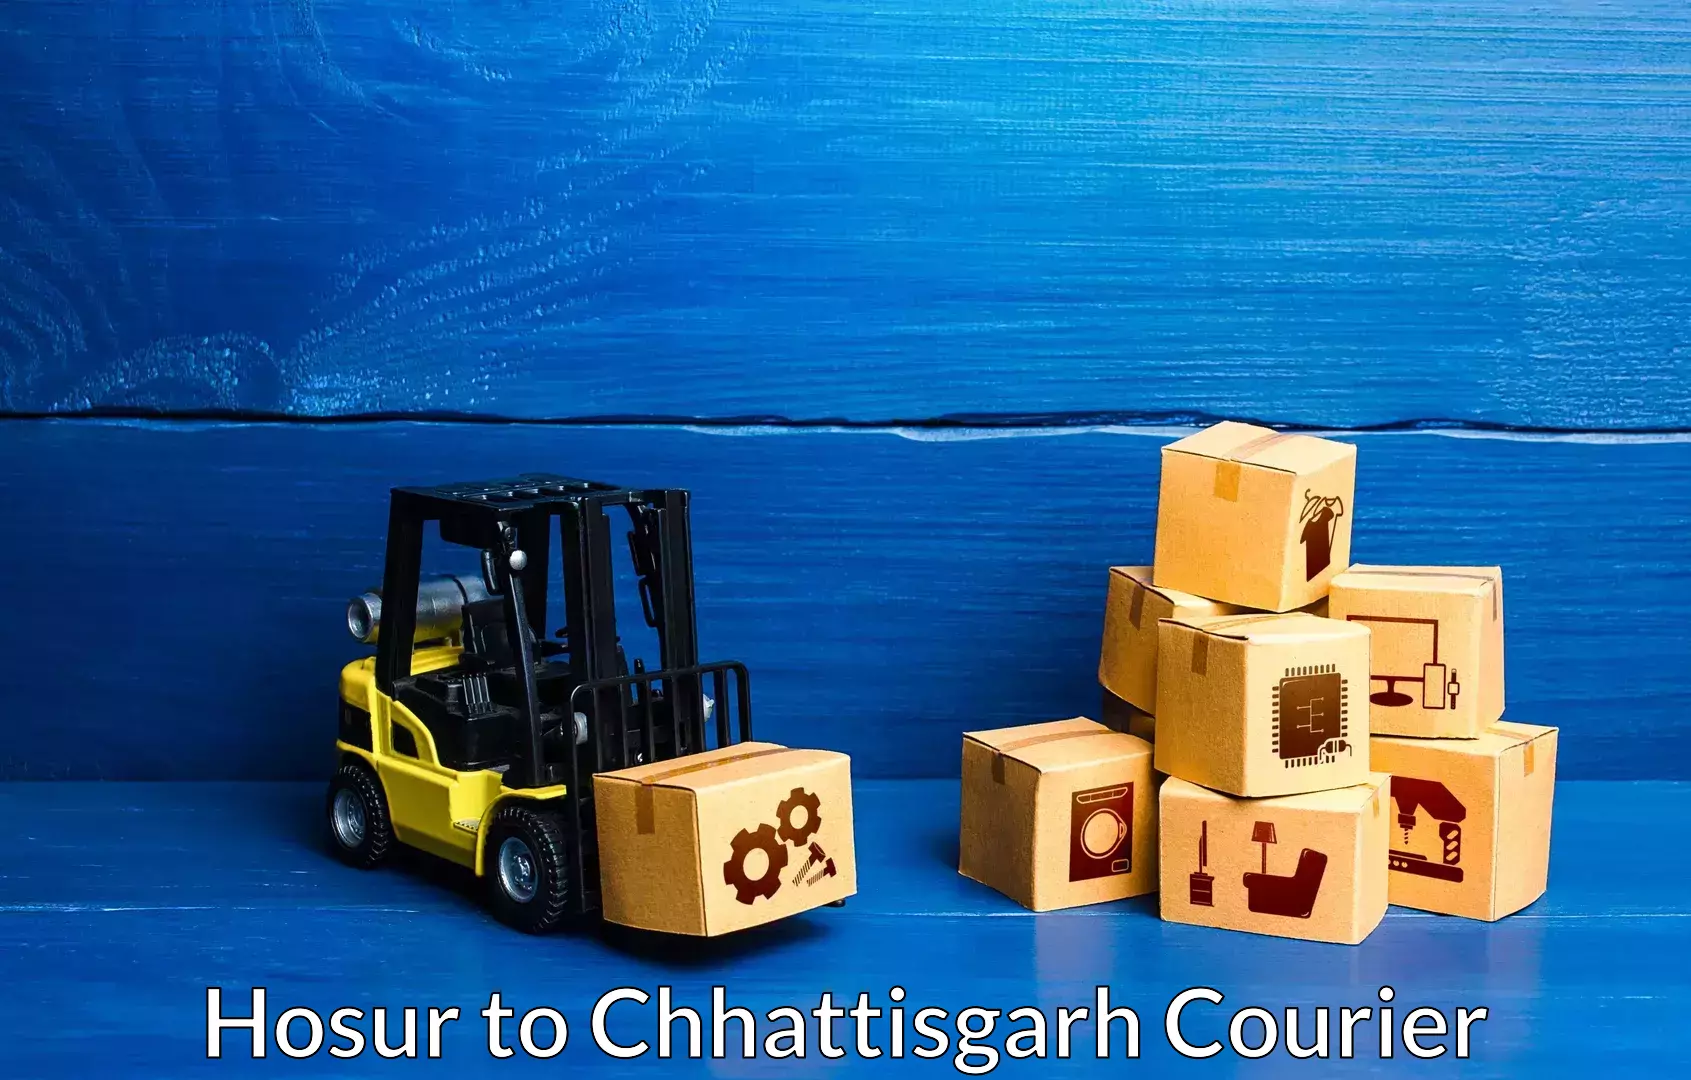 Furniture delivery service Hosur to Chhattisgarh